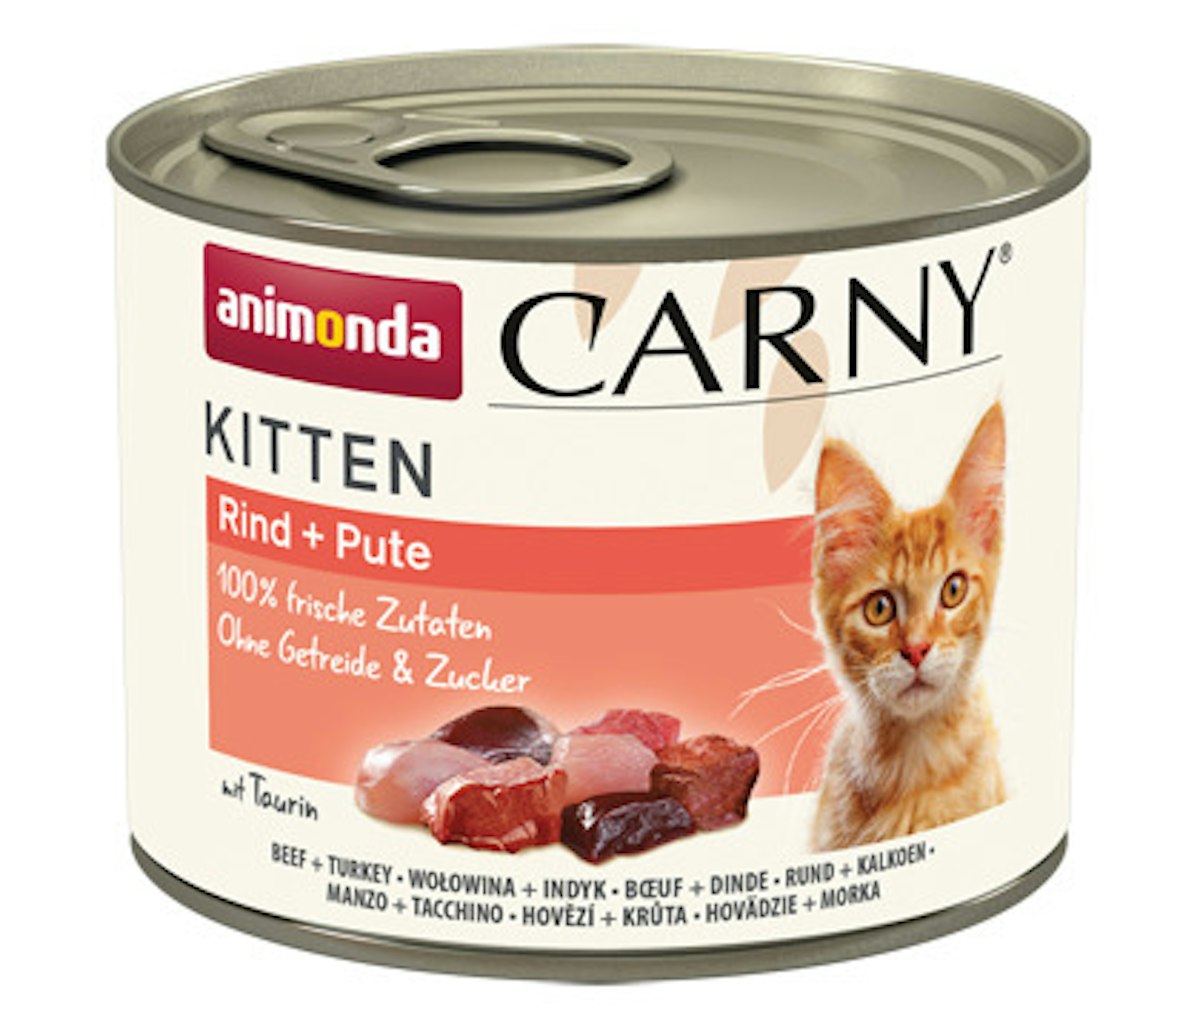 animonda Carny Kitten 200g Dose Katzennassfutter 24 x 200 Gramm Rind und Pute